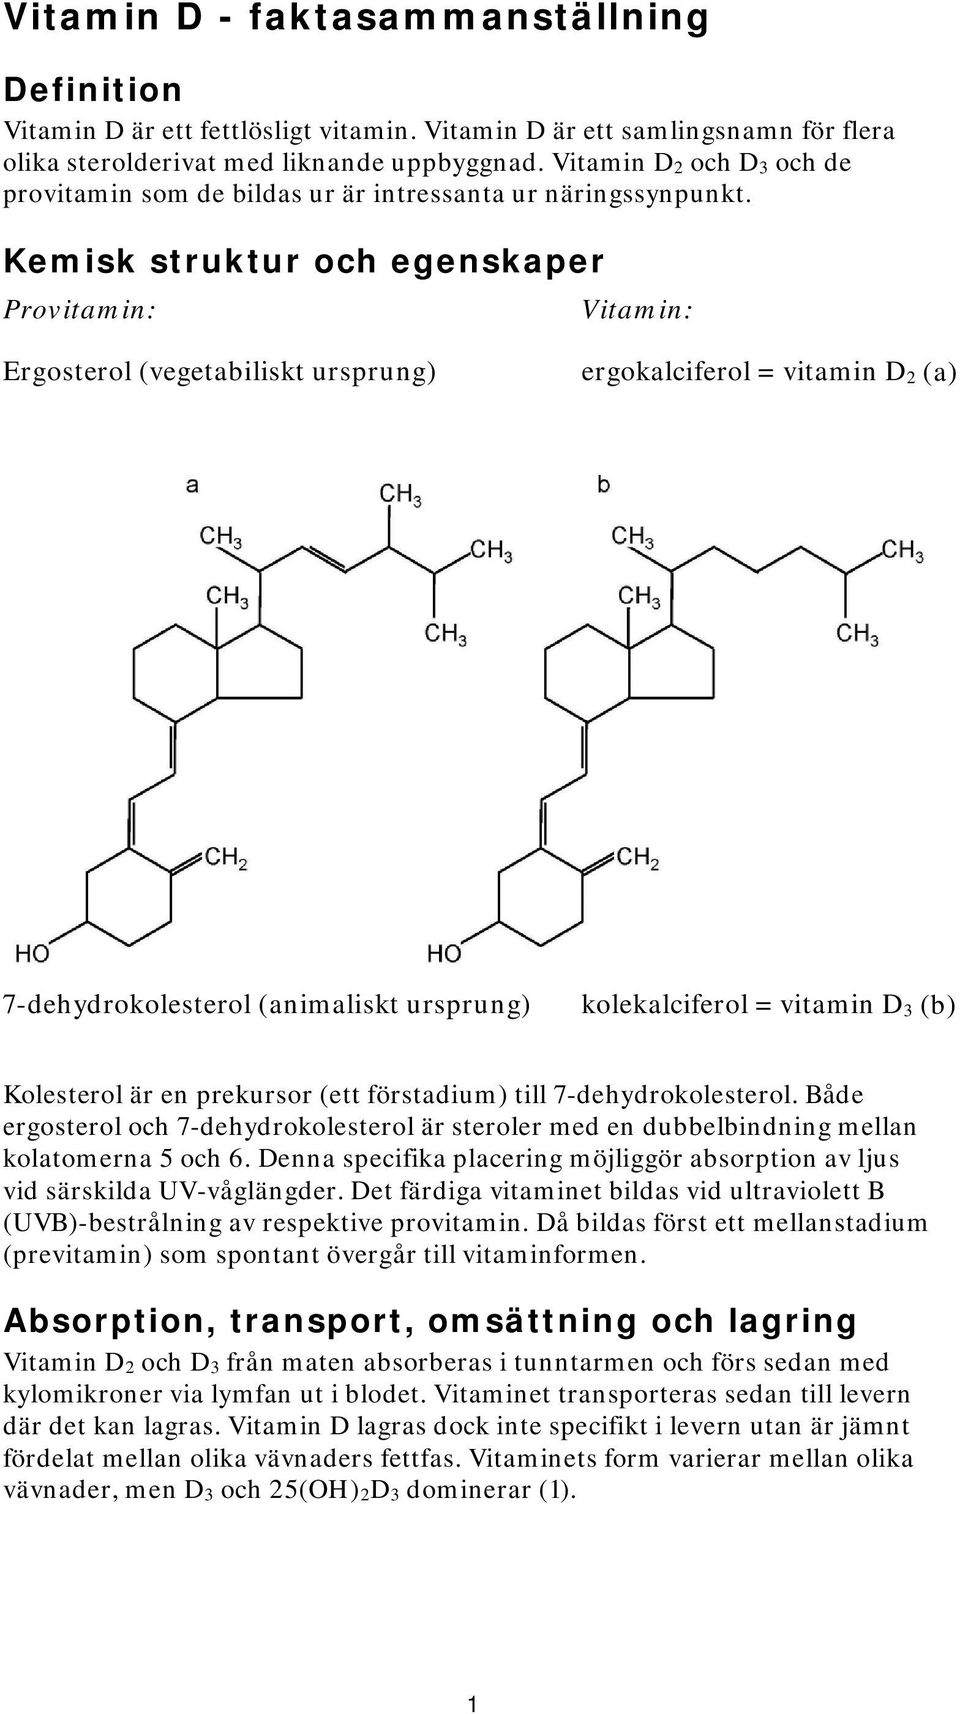 Kemisk struktur och egenskaper Provitamin: Vitamin: Ergosterol (vegetabiliskt ursprung) ergokalciferol = vitamin D 2 (a) 7-dehydrokolesterol (animaliskt ursprung) kolekalciferol = vitamin D 3 (b)